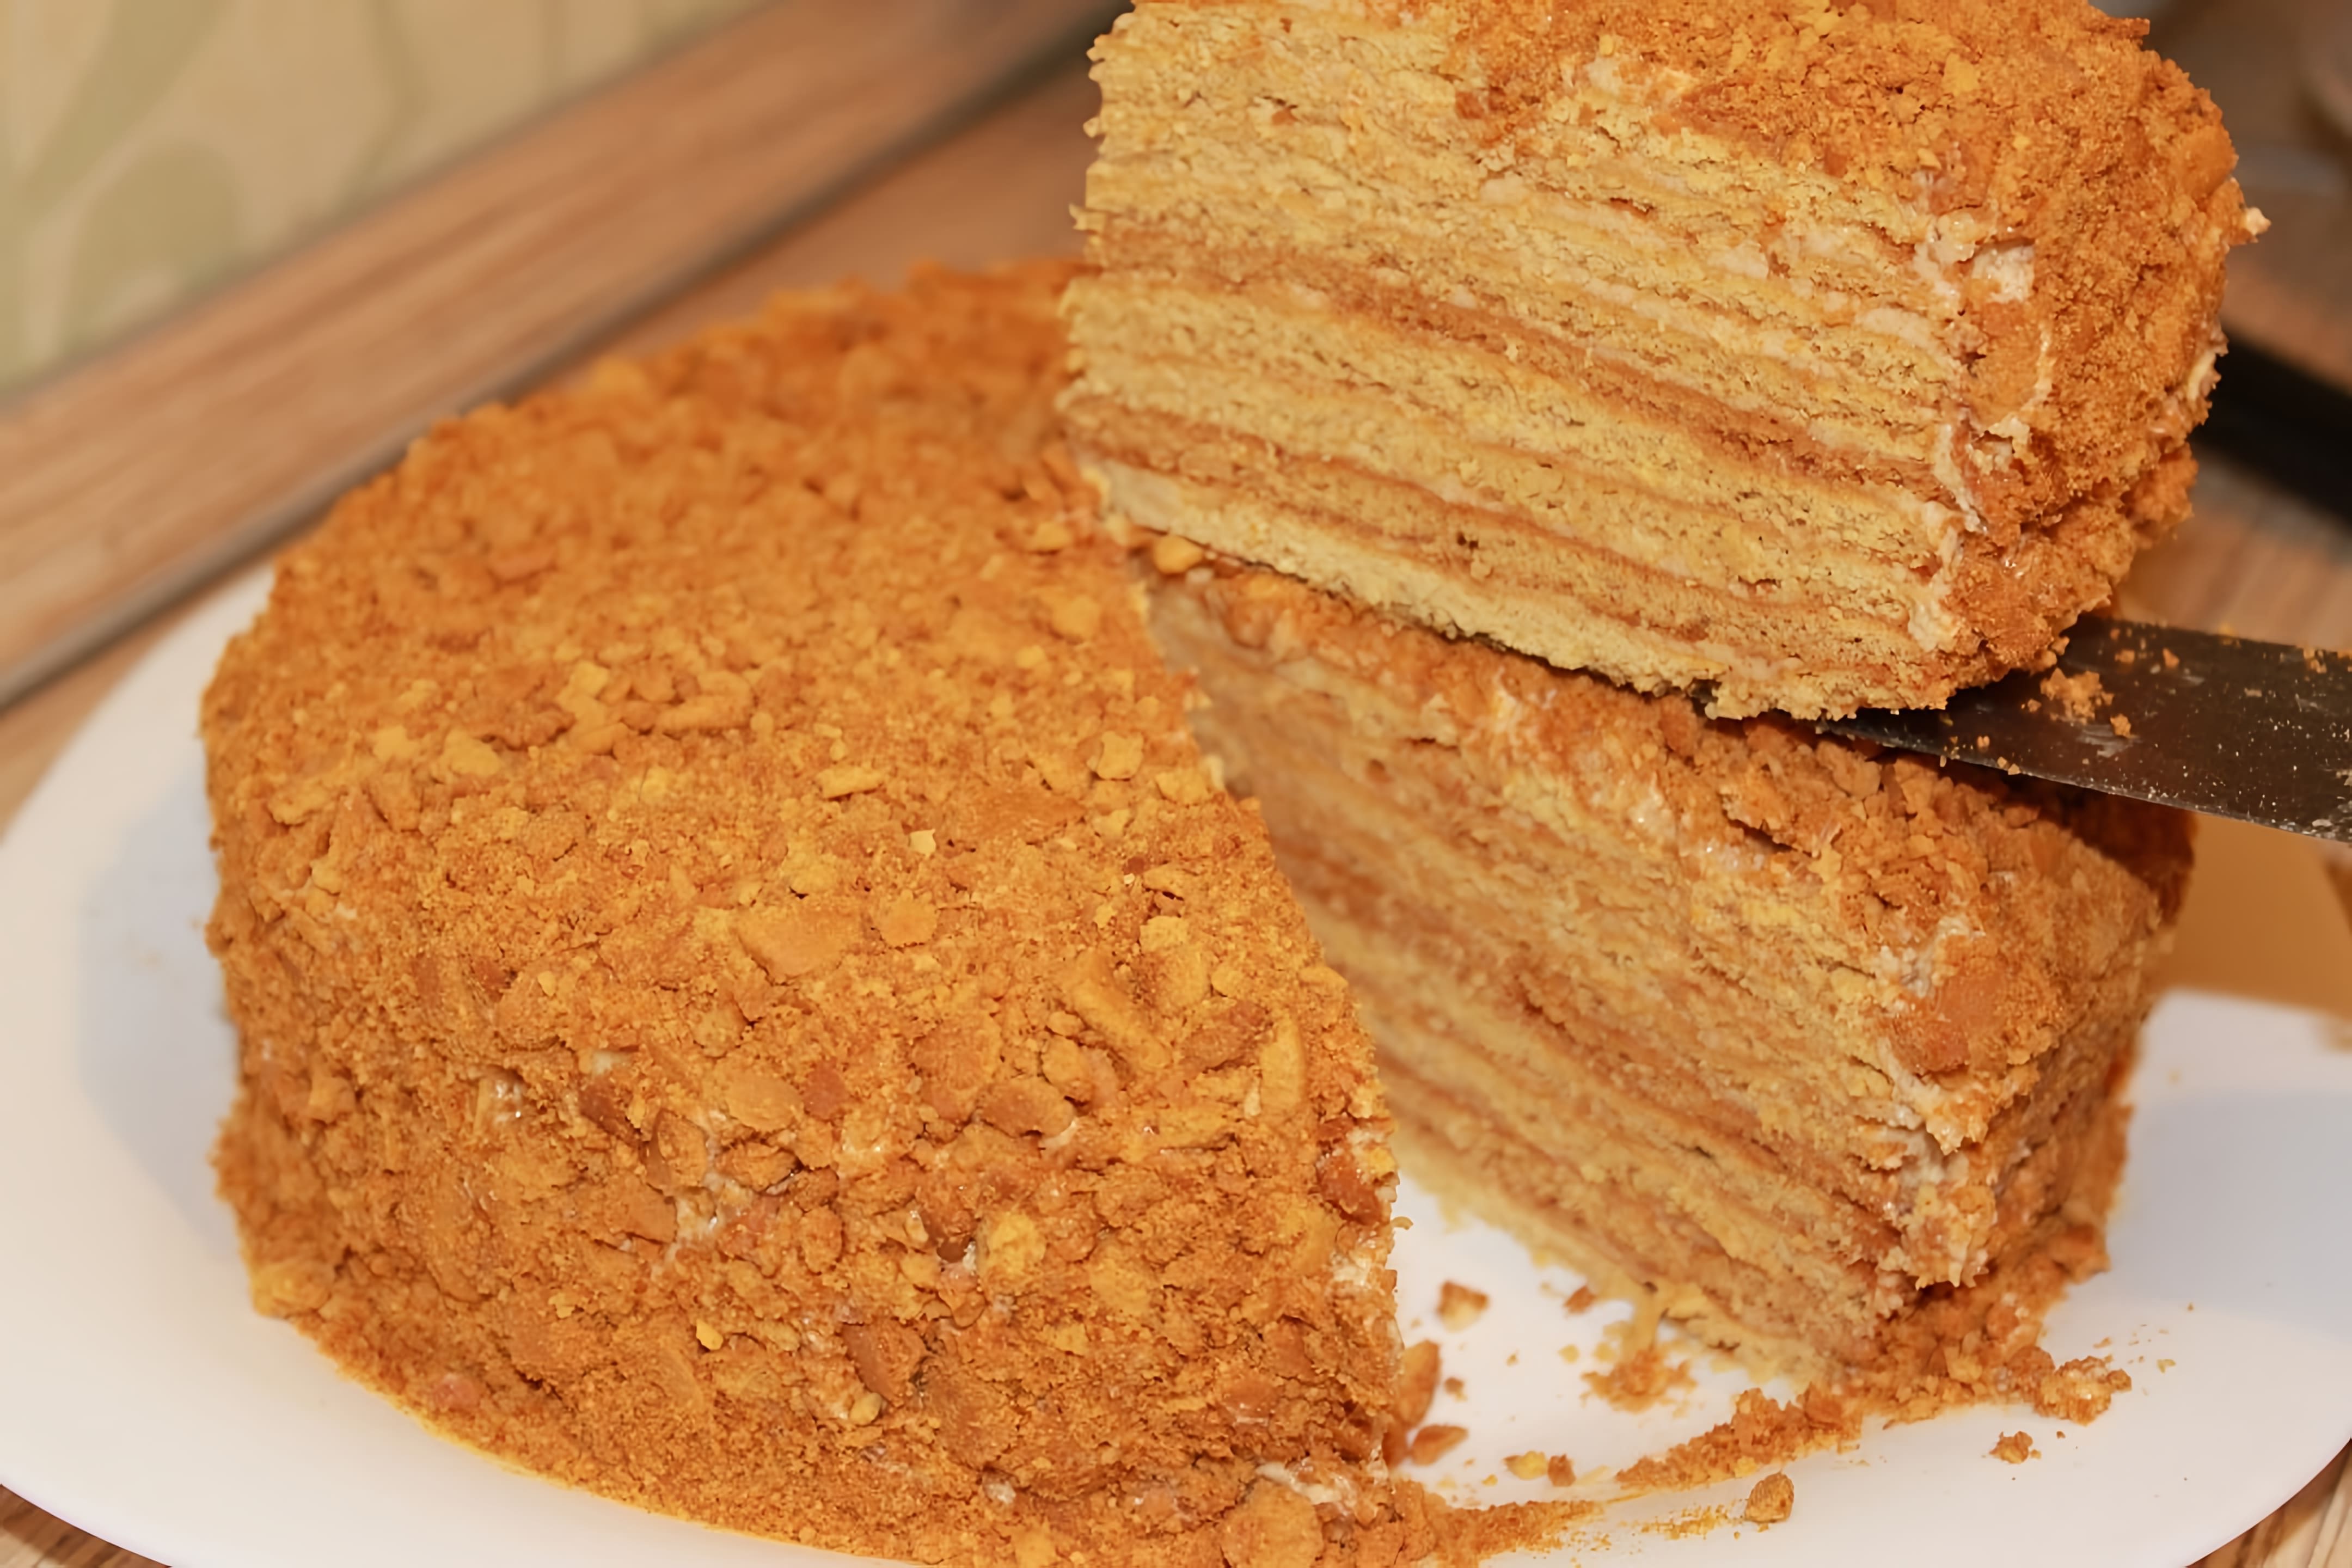 В этом видео демонстрируется процесс приготовления домашнего медового торта под названием "Рыжик"